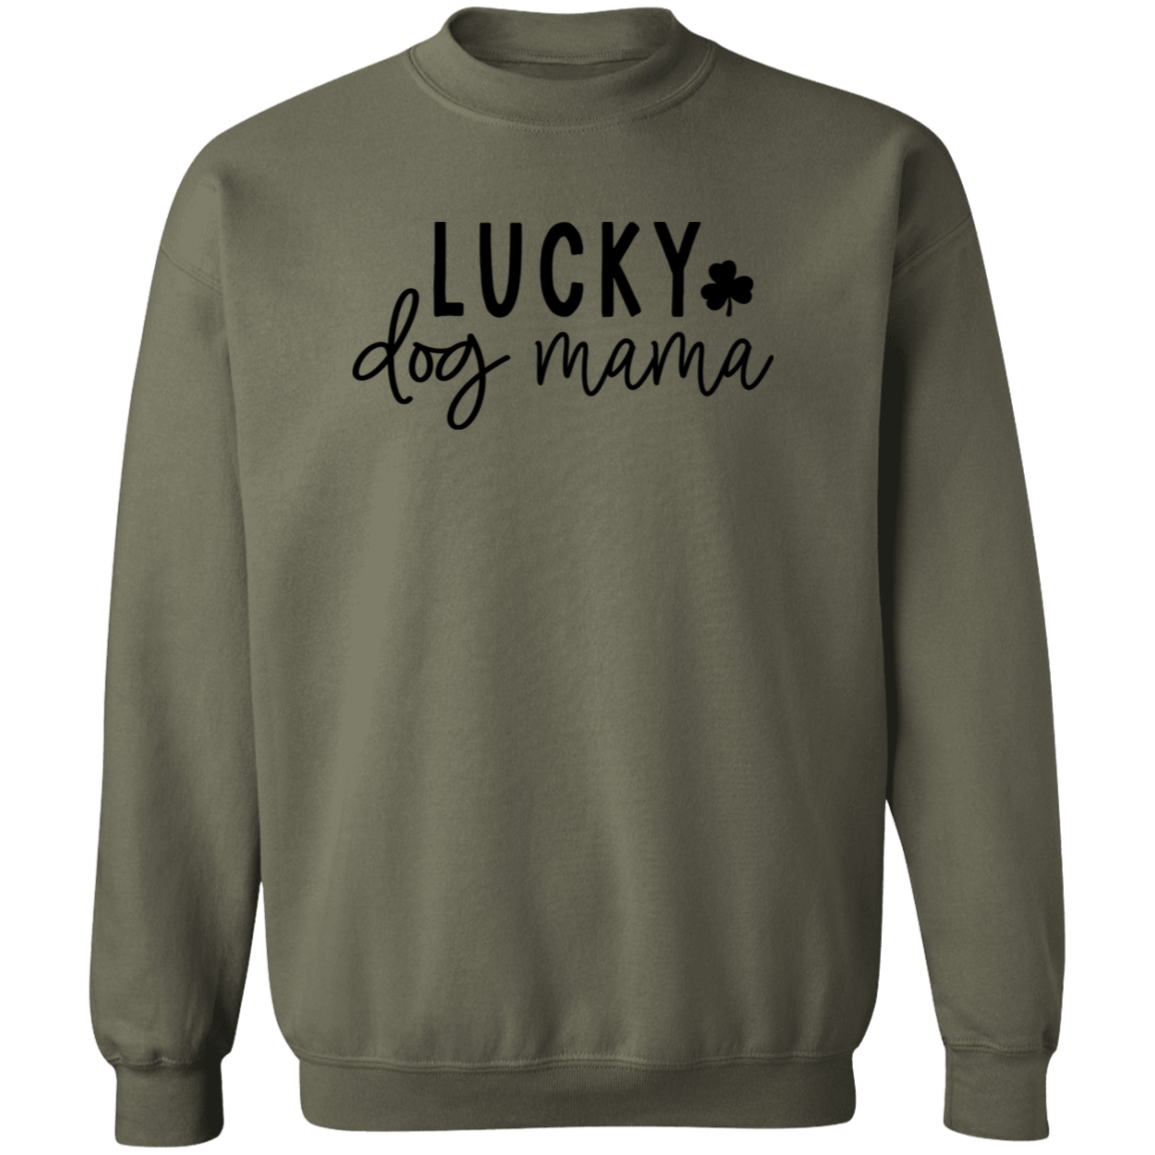 Lucky Dog Mama Sweatshirt